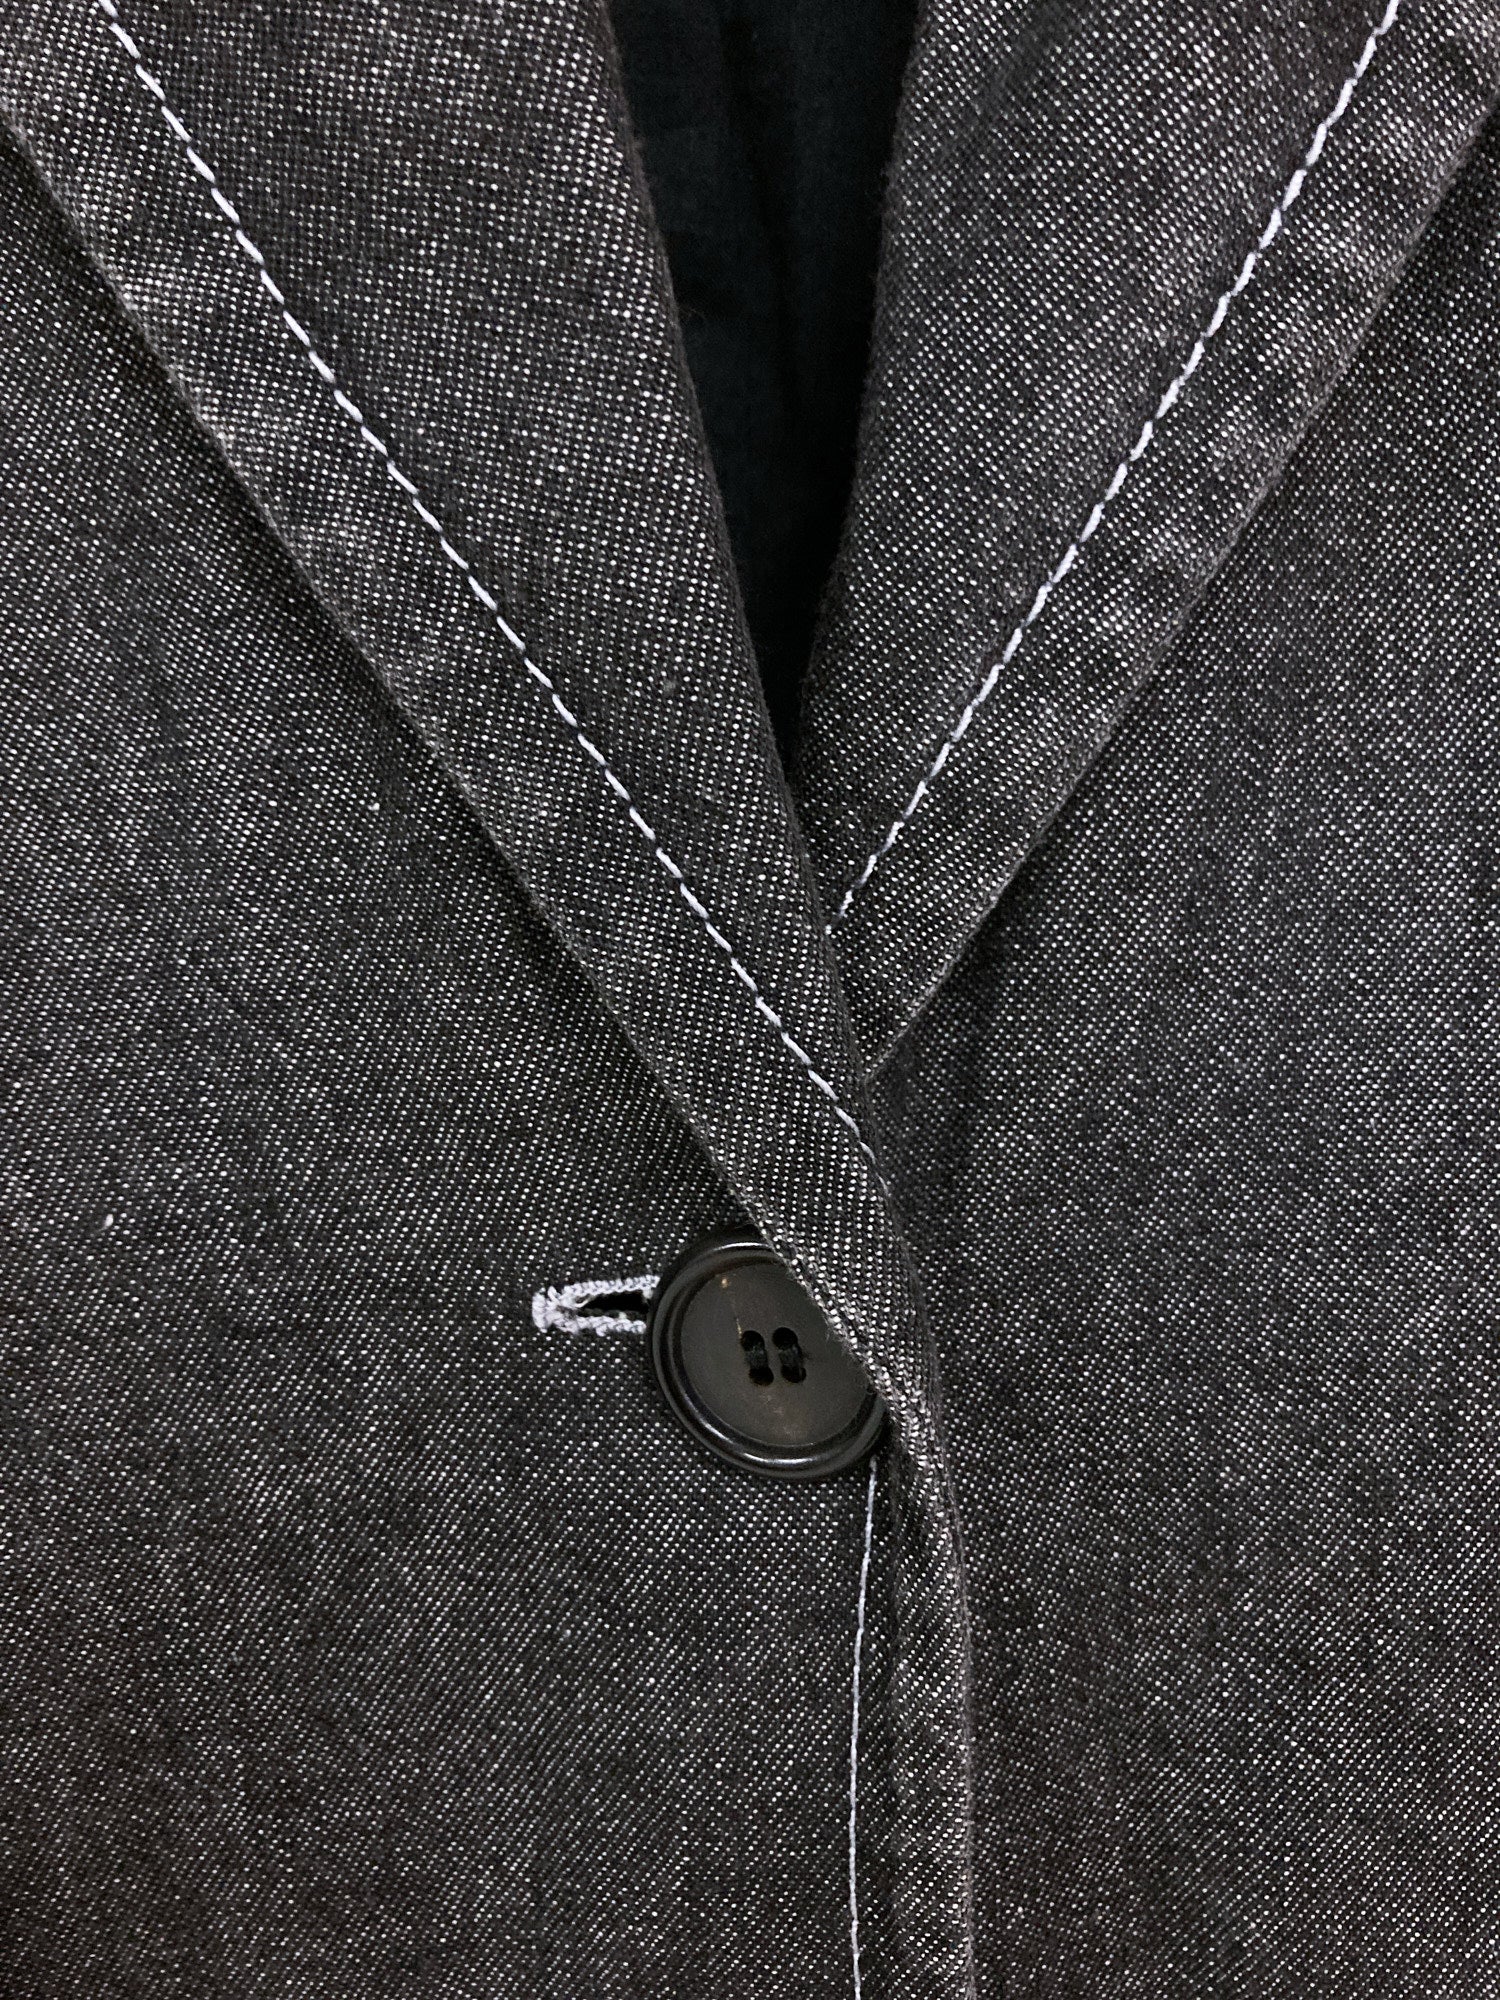 Ann Demeulemeester dark grey lightweight denim one button blazer - size 36